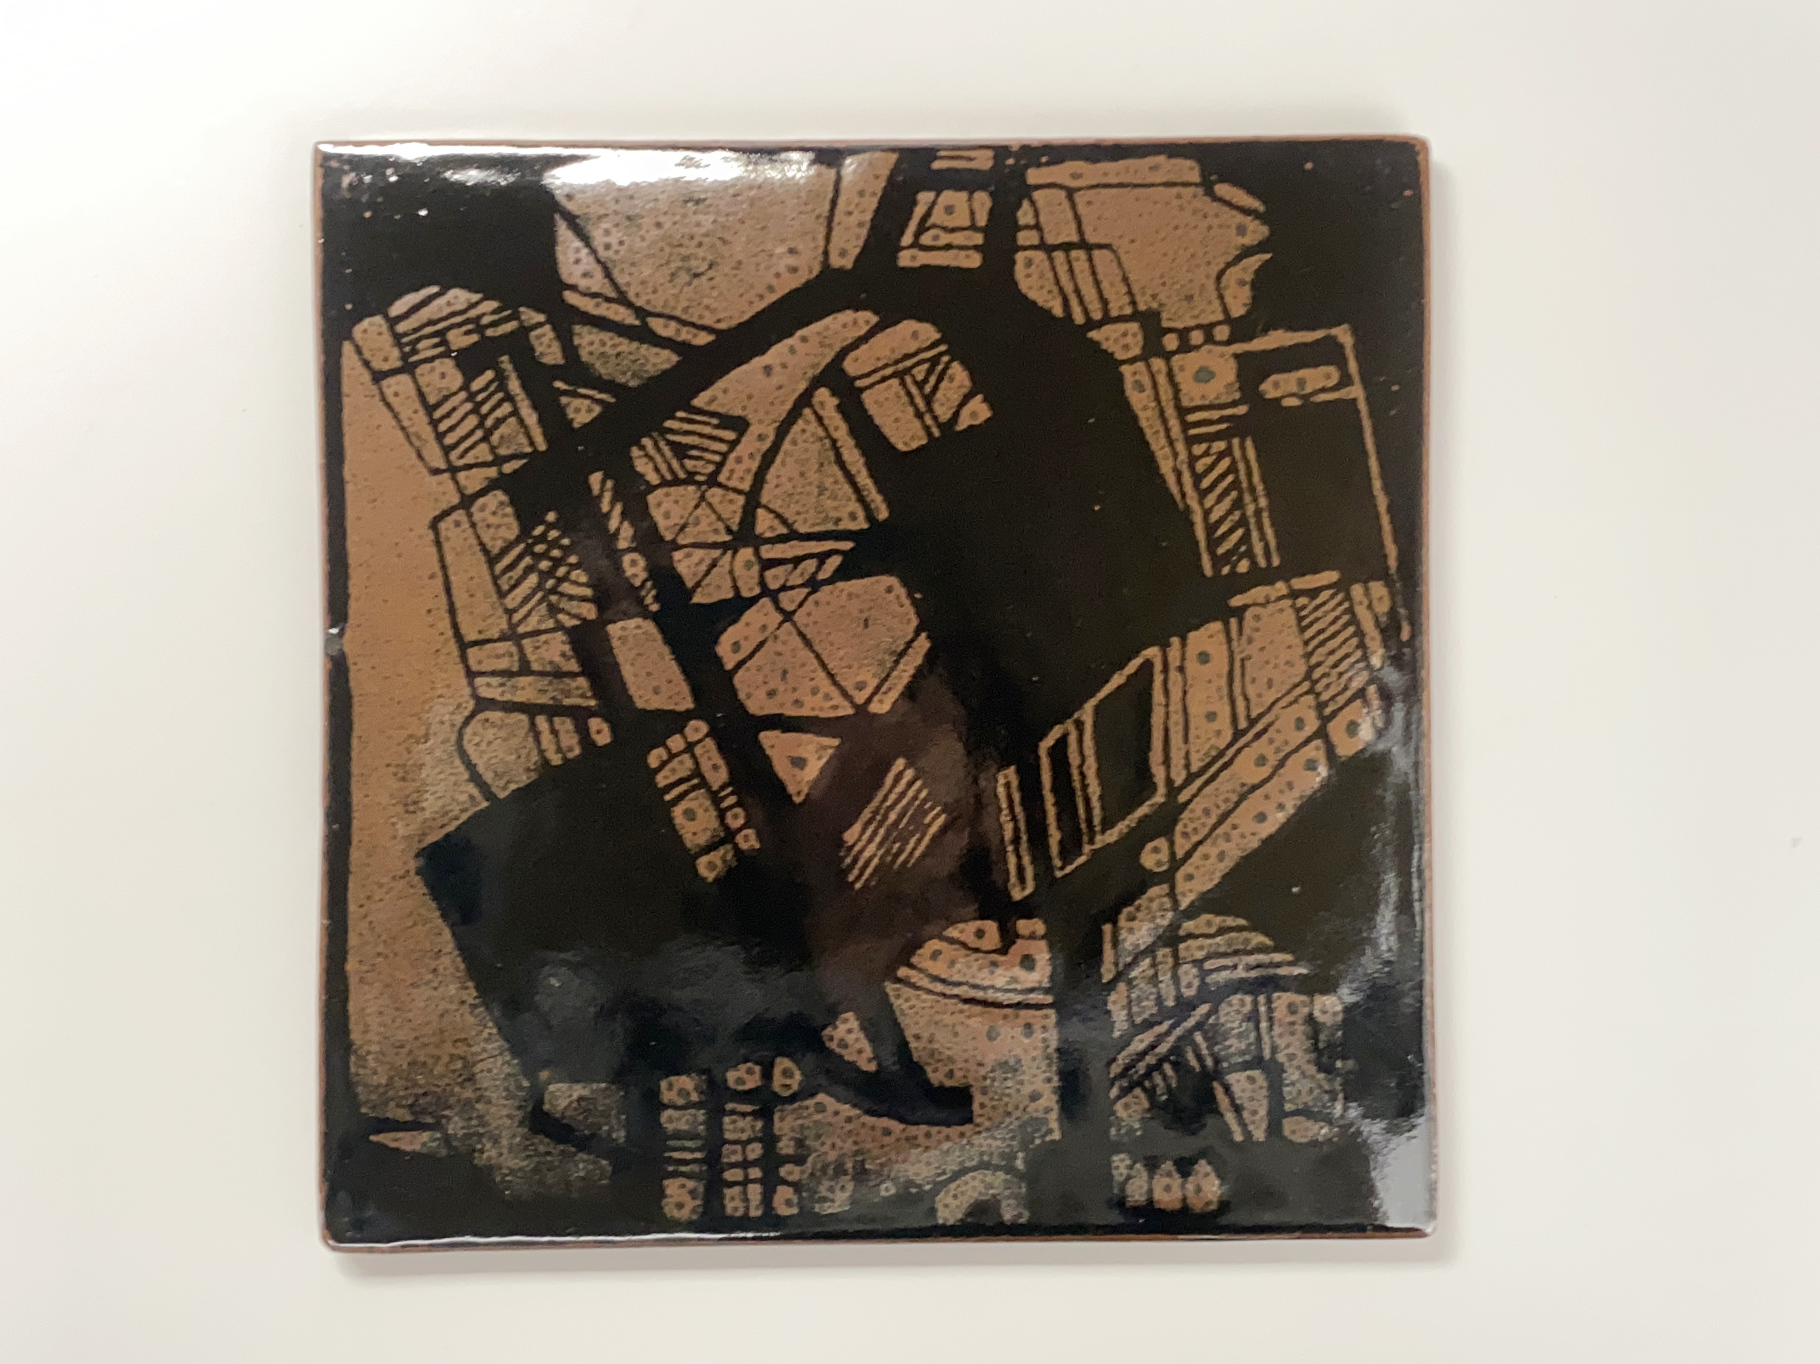 Wand-Platte, Keramik, Porzellan, Unikat, abstrakte Malerei mit Wachs auf schwarzer Glasur, darauf mattschwarze Glasur, von Wilhelm & Elly Kuch, 2006